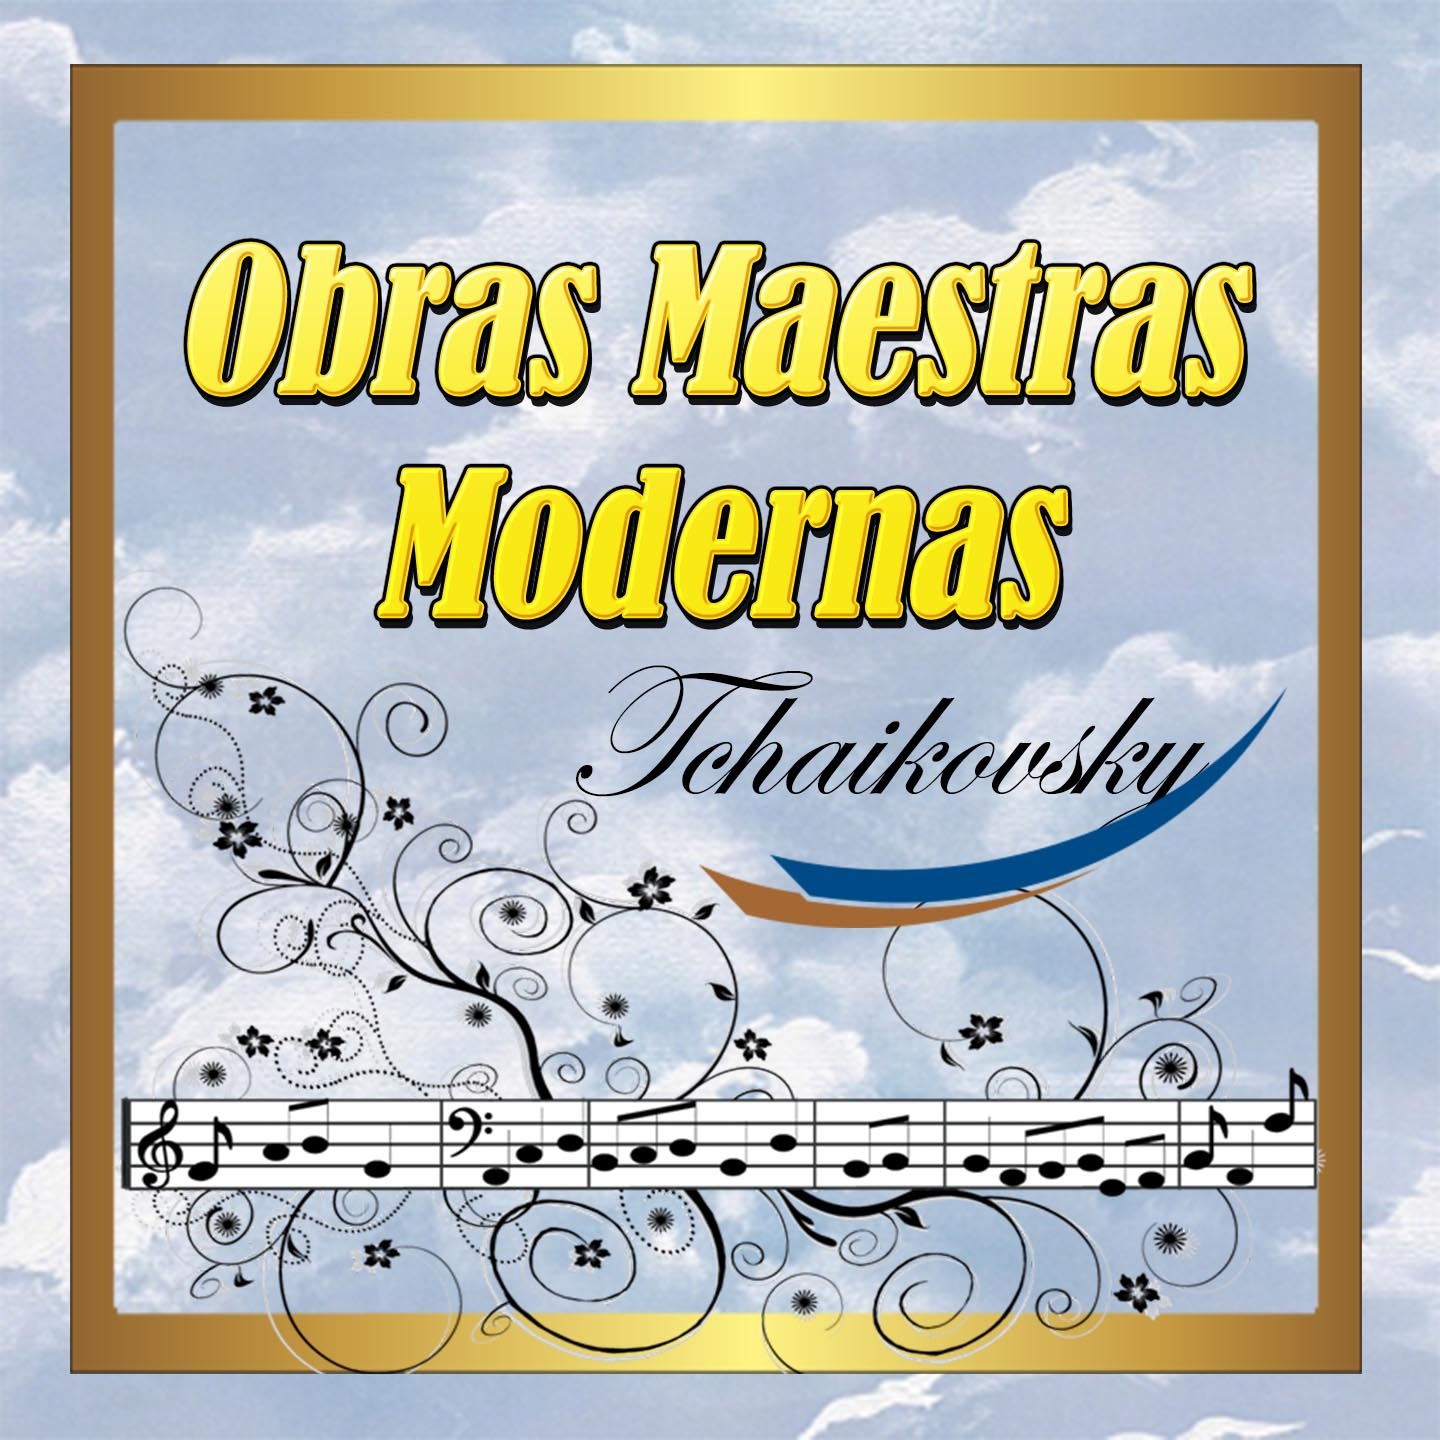 Violin Concerto in D Major, TH 59: I. Allegro moderato